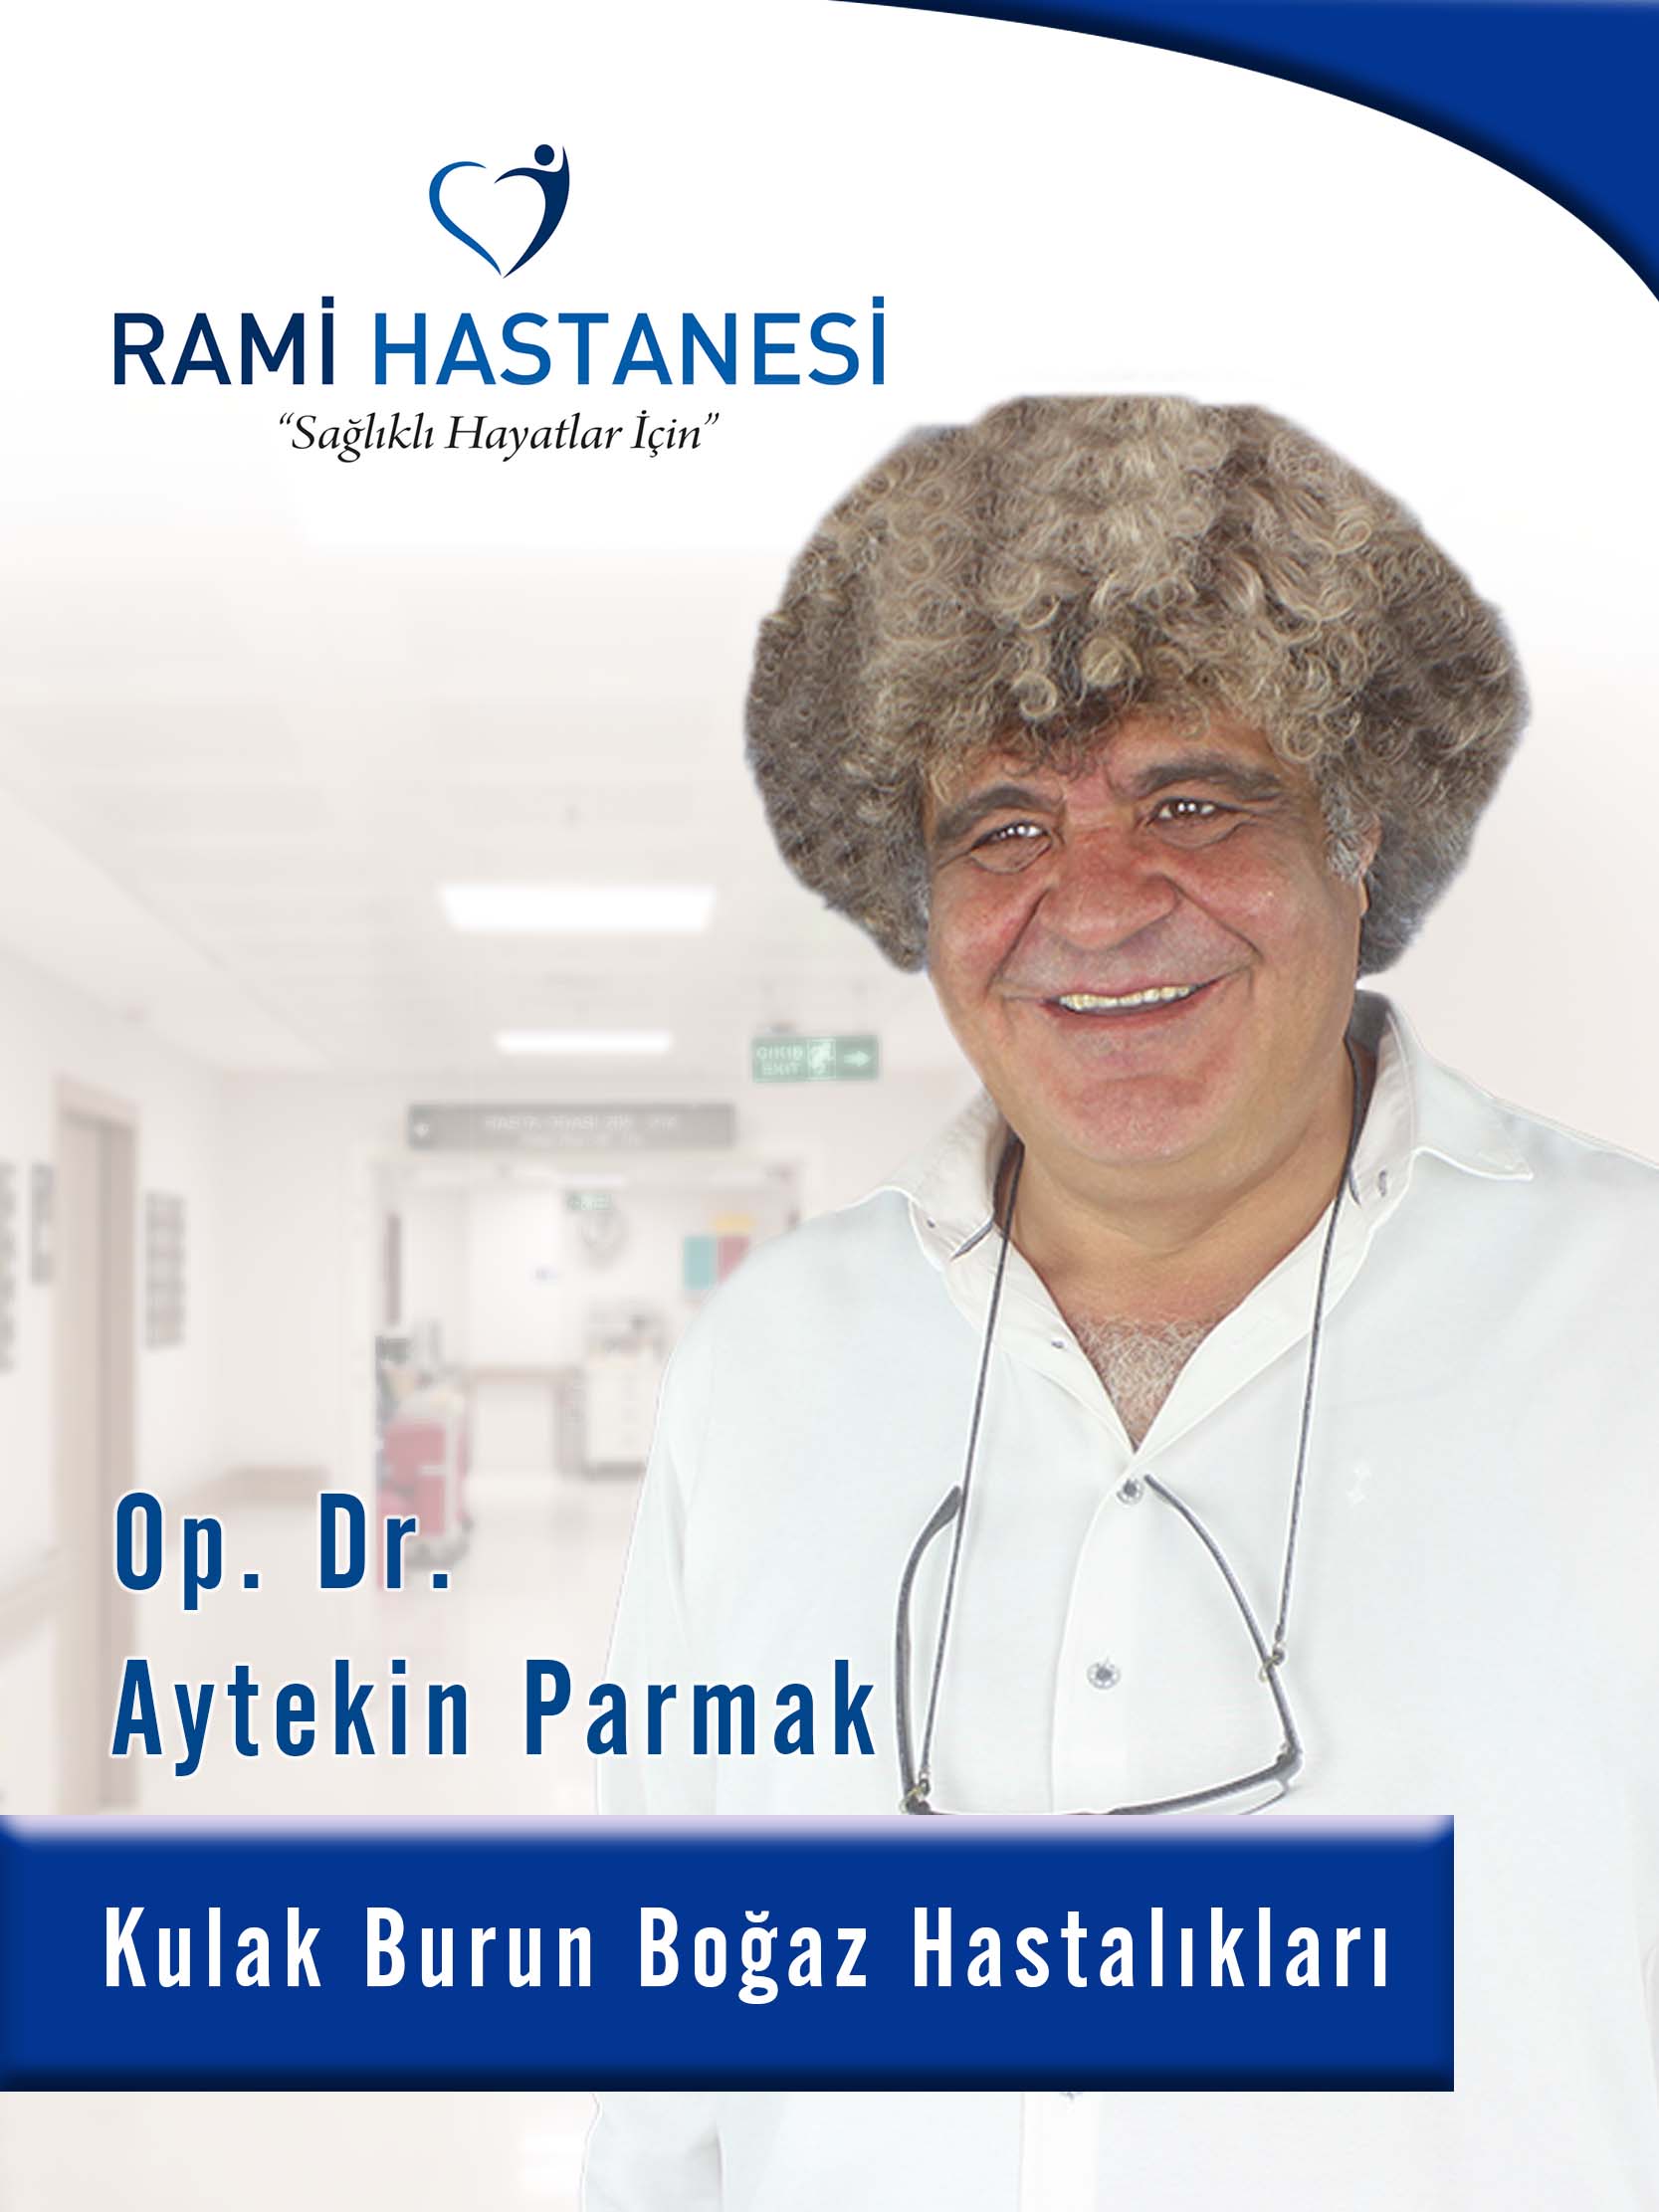 طبيب المشغل Aytekin PARMAK